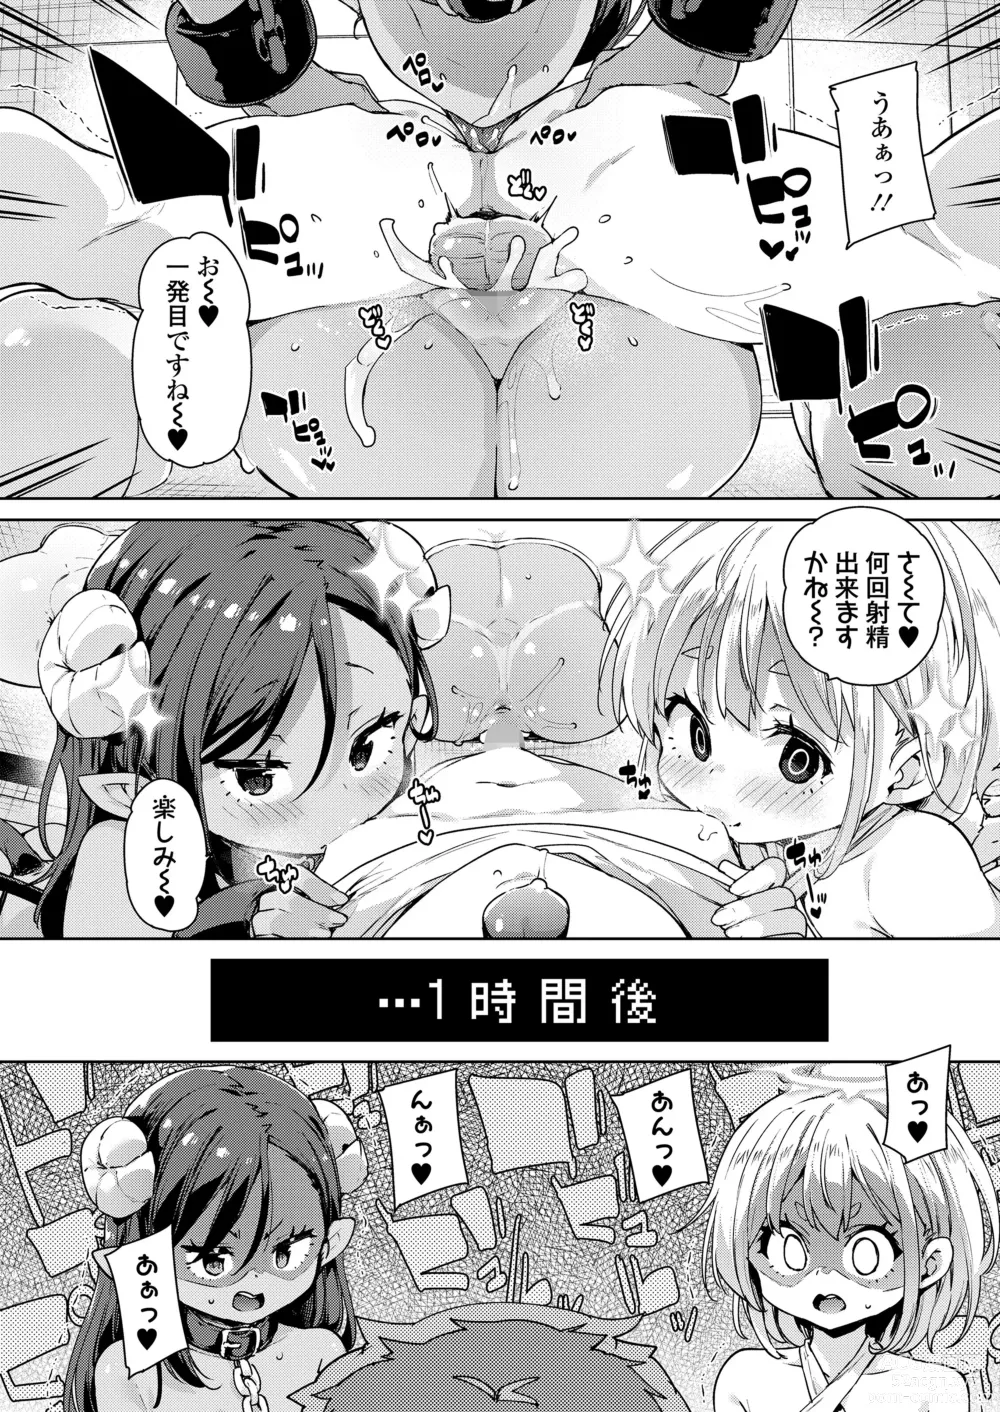 Page 10 of manga Towako Oboro Emaki 14